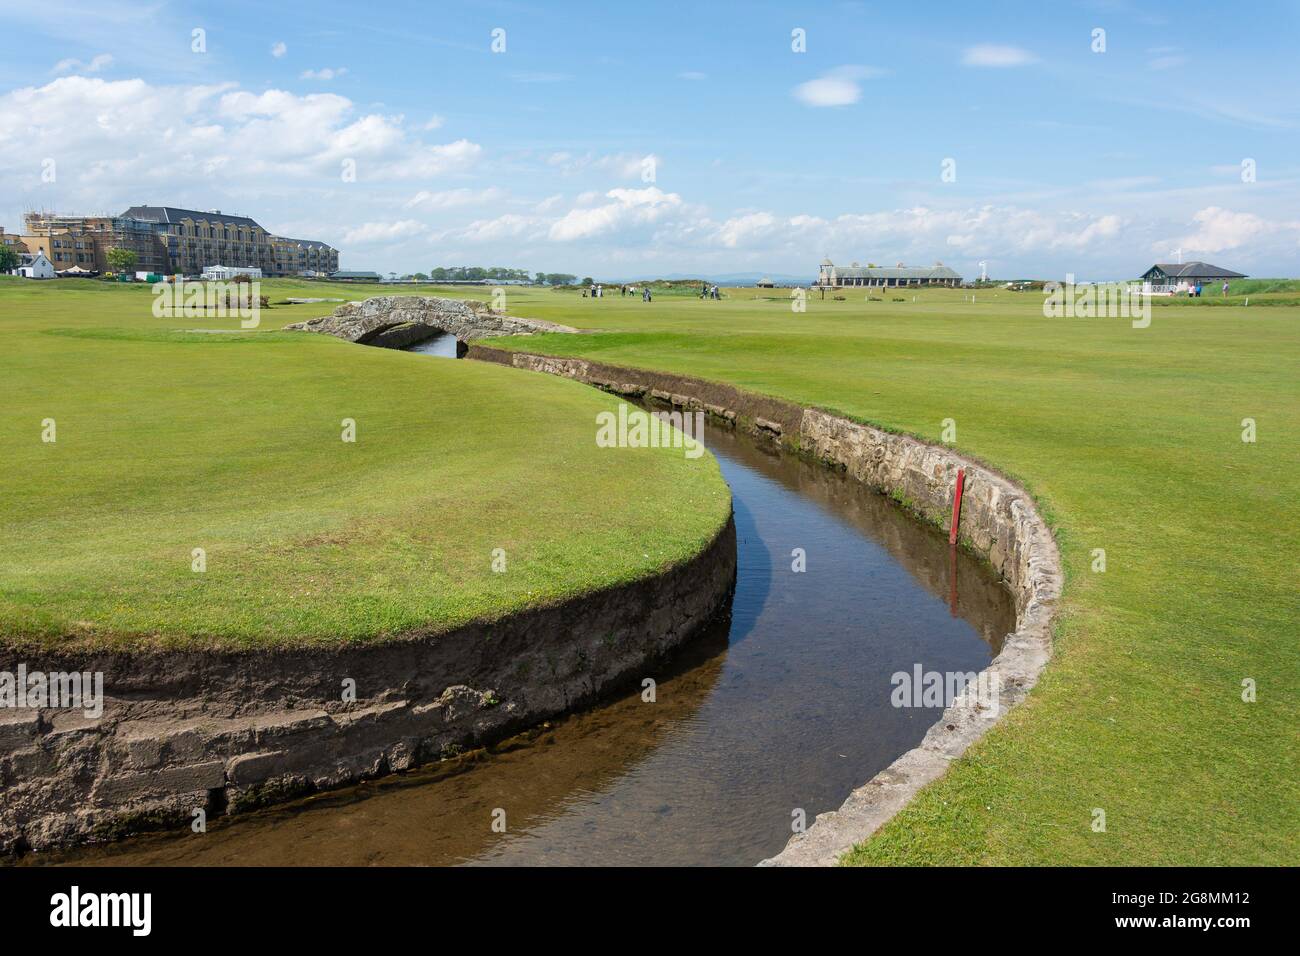 Die Swilcan Bridge auf dem 18. Fairway, der Old Course, der Royal and Ancient Golf Club of St Andrews, St Andrews, Fife, Schottland, Großbritannien Stockfoto